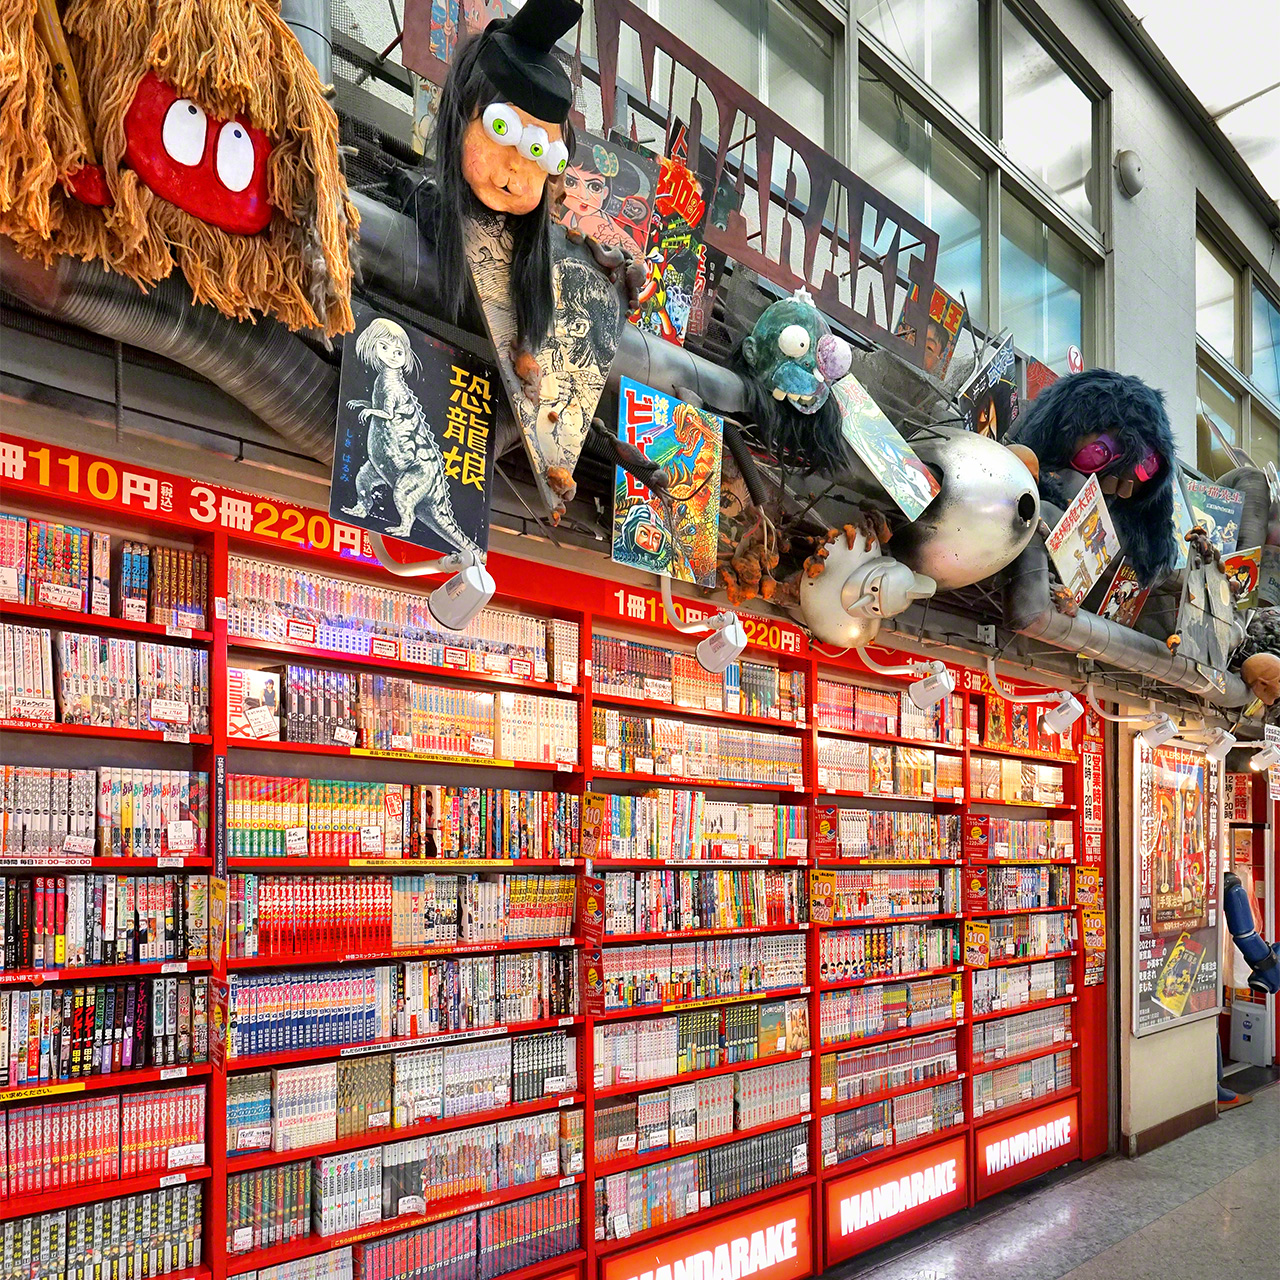 La sede principal de Mandarake, en el tercer piso de Nakano Broadway, hace alarde de una impresionante colección de shōnen manga y seinen manga.